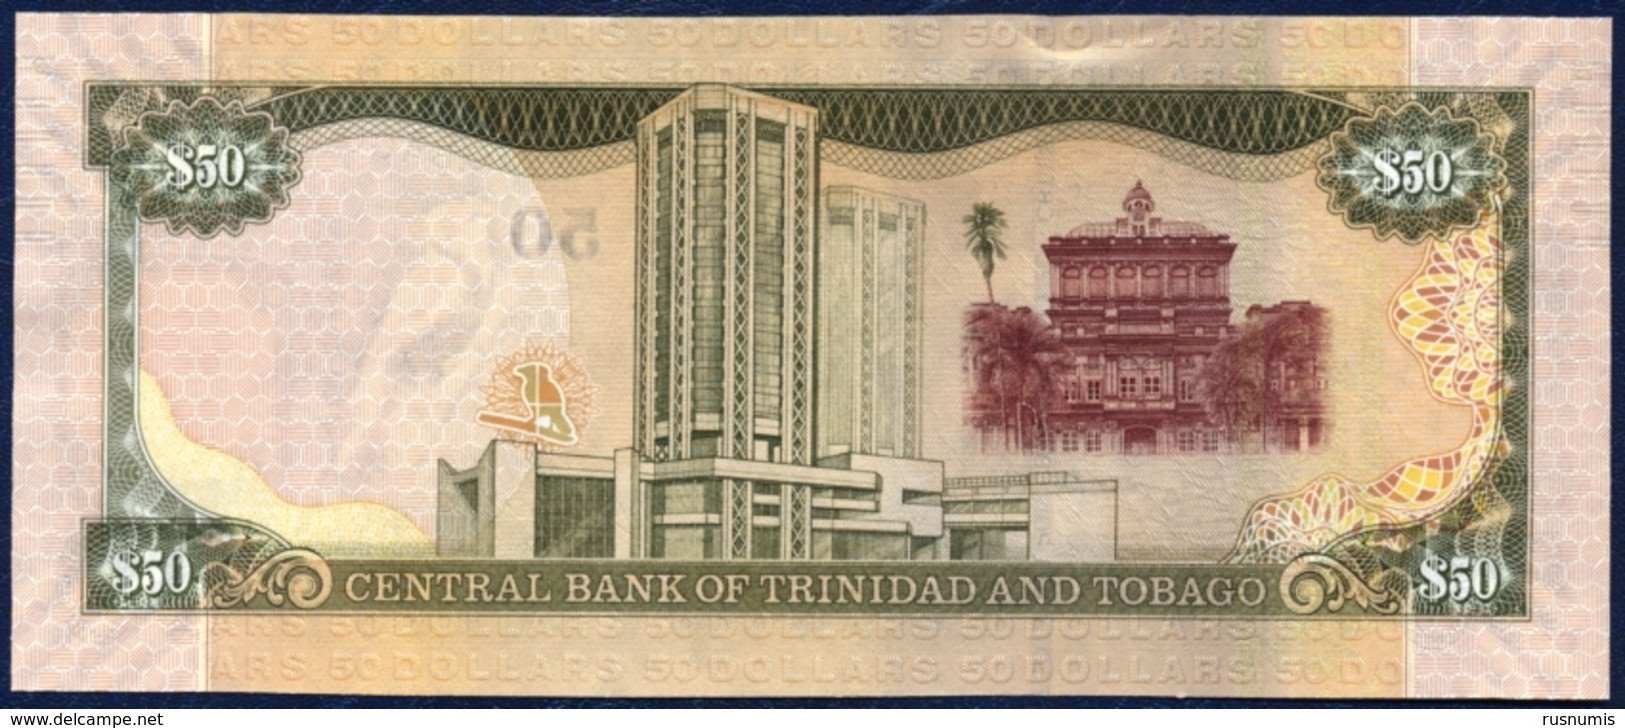 TRINIDAD AND TOBAGO 50 DOLLARS P-50 RED CAPPED CARDINAL BIRD CENTRAL BANK E. WILLIAMS FINCOMPLEX PARLIAMENT 2006 UNC - Trinidad En Tobago